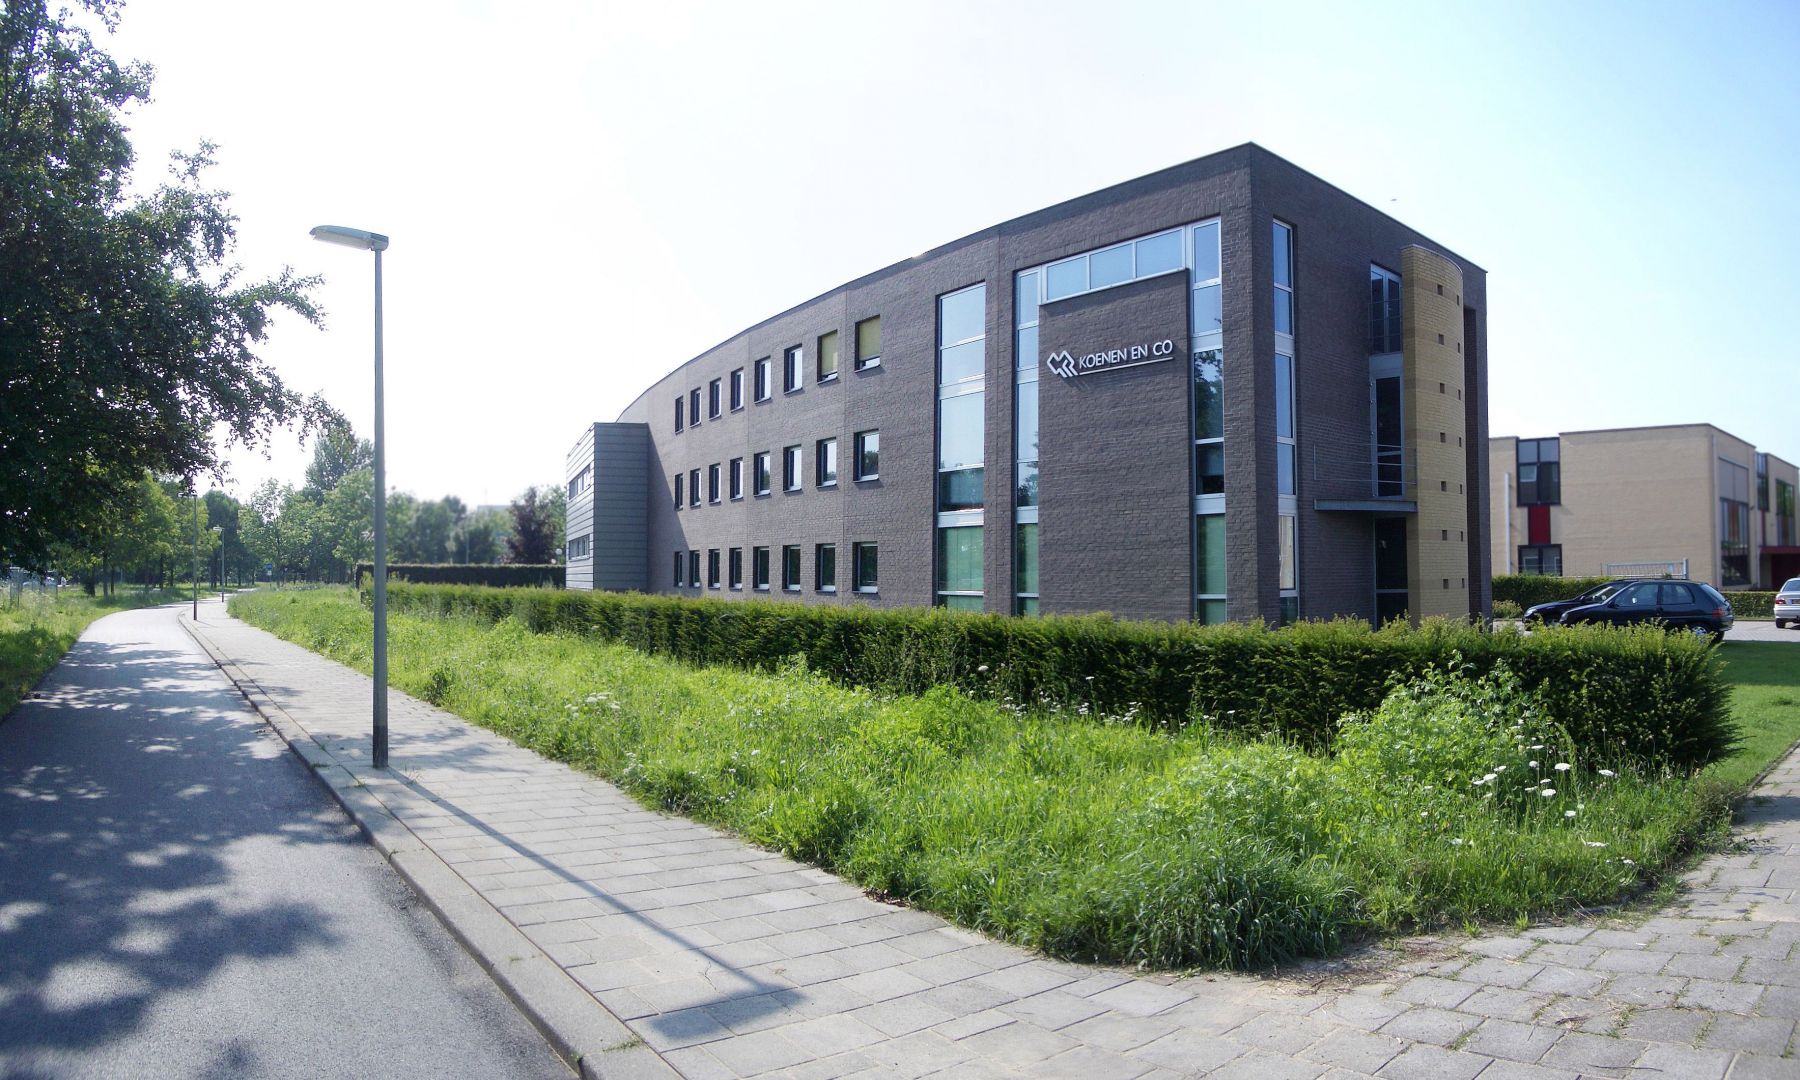 Accountantskantoor Koenen & Co - Roermond, Engelman Architecten